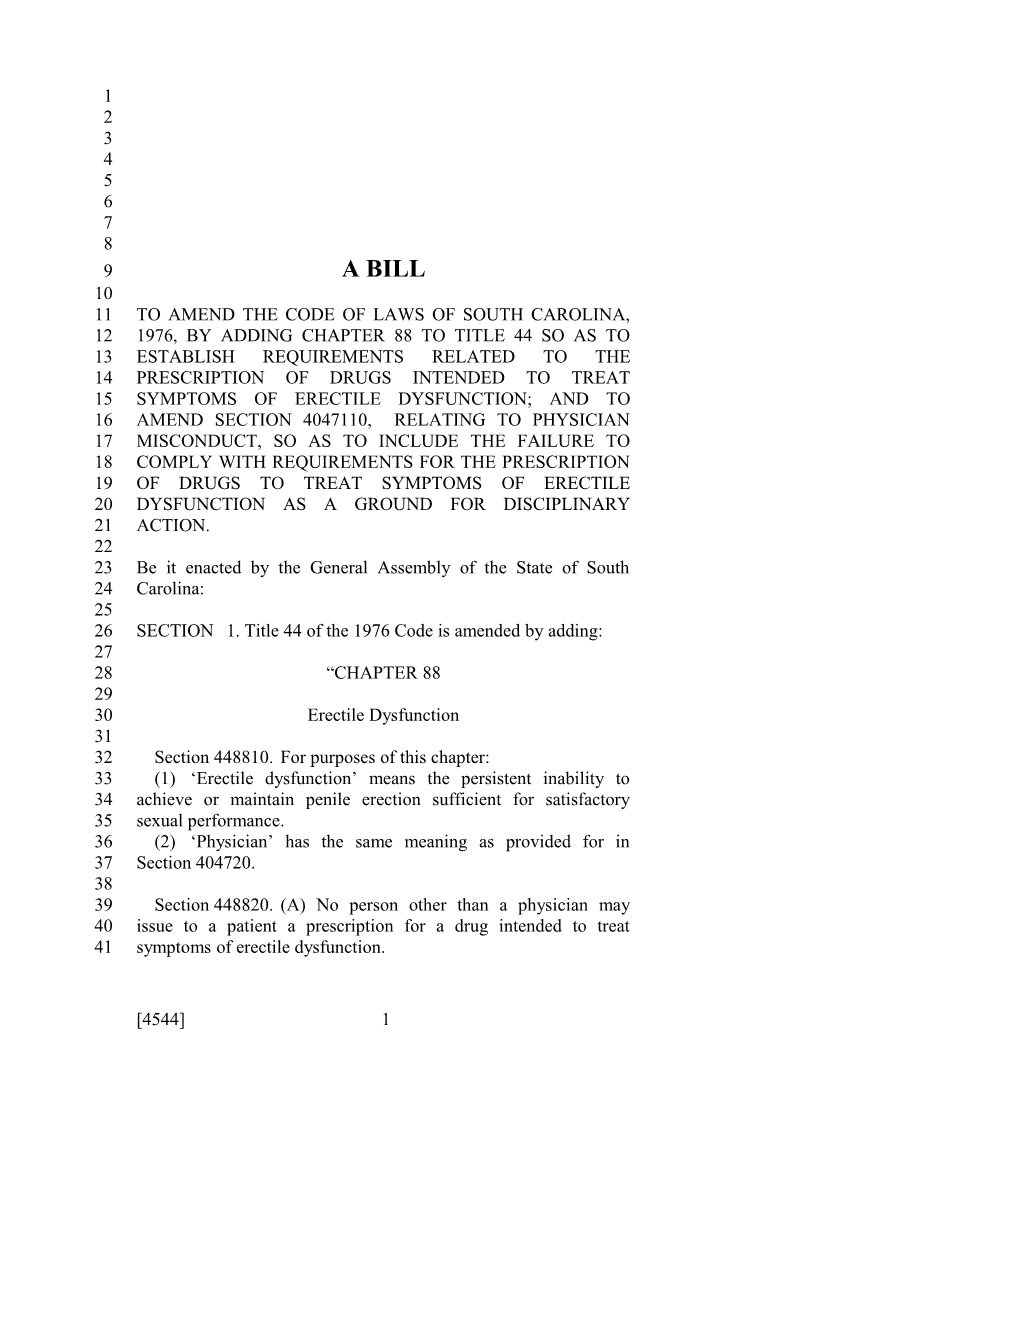 2015-2016 Bill 4544 Text of Previous Version (Dec. 10, 2015) - South Carolina Legislature Online